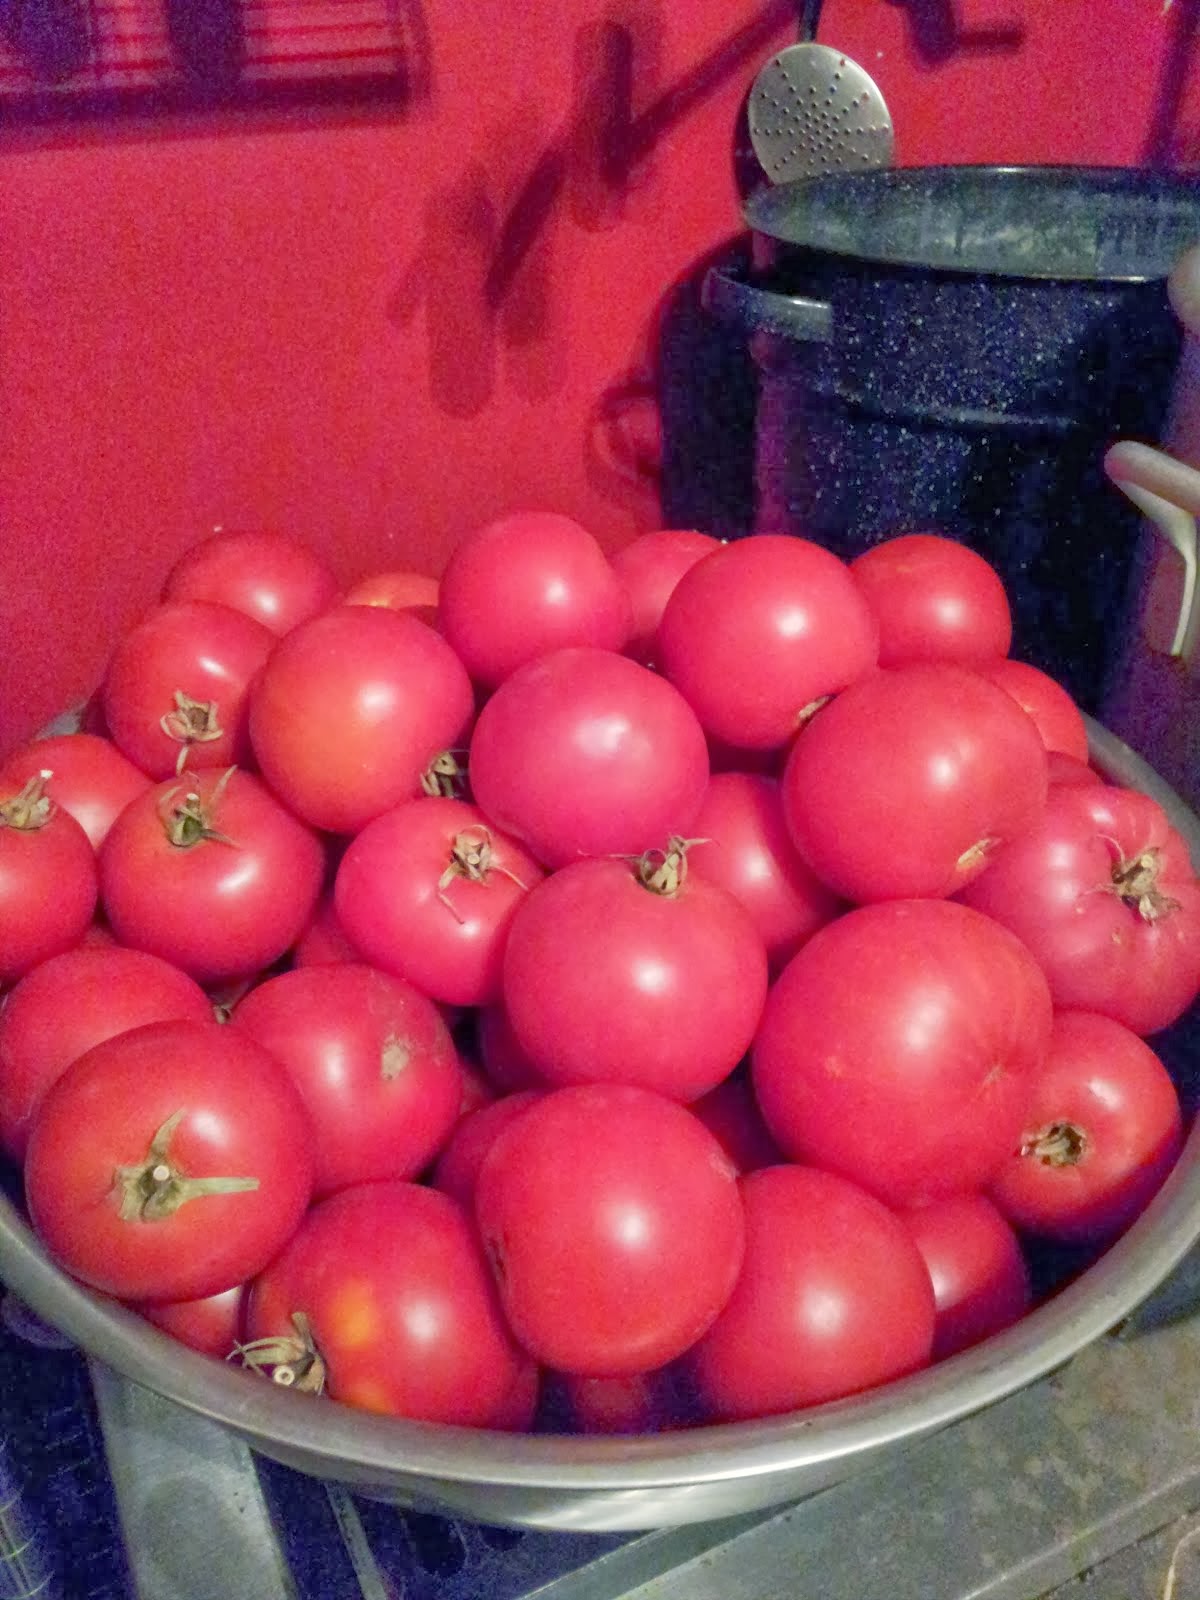 Big Beef tomatoes